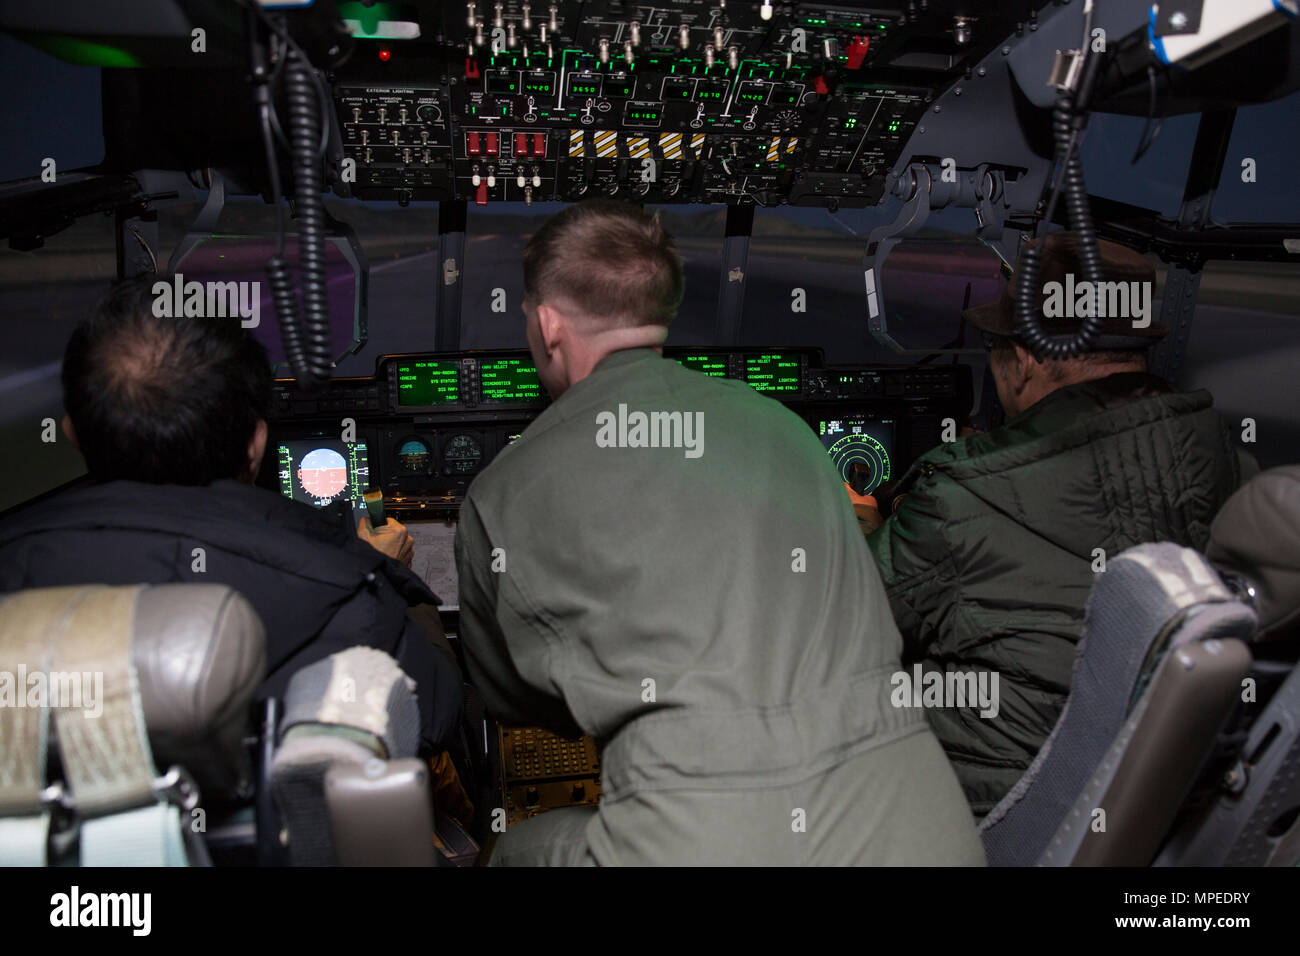 Le capitaine du Corps des Marines américain Donald Shrewsbury, un KC-130J avec pilote de l'Escadron de transport de ravitaillement aérien maritime (152) VMGR, parle des médias japonais local grâce à l'utilisation d'un simulateur de vol KC-130J au cours d'un événement médiatique à Marine Corps Air Station Iwakuni, Japon, le 15 février 2017. L'événement médiatique a été mis en place comme une occasion pour les journalistes japonais local pour obtenir une expérience de première main en comment les simulateurs former les pilotes et d'améliorer l'état de préparation. Les simulateurs d'accroître la sécurité, de la compétence et permet aux pilotes de train de façon dynamique sans imposer d'autres contraintes mécaniques sur l'avion conduisant à des vols plus sûrs Banque D'Images